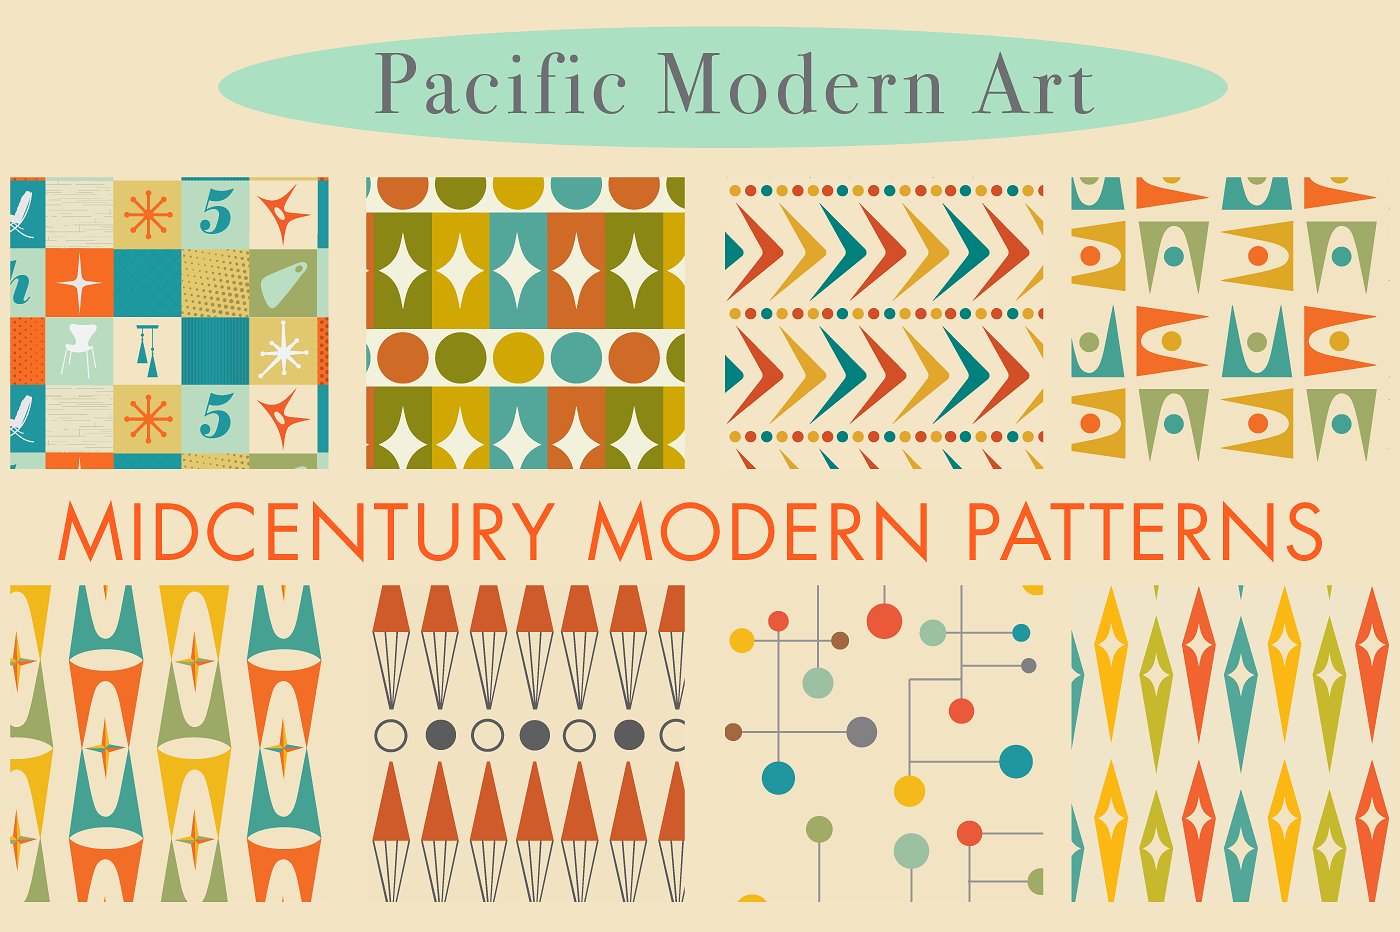 中世纪风格现代矢量图形 Mid Century Modern Patterns插图1